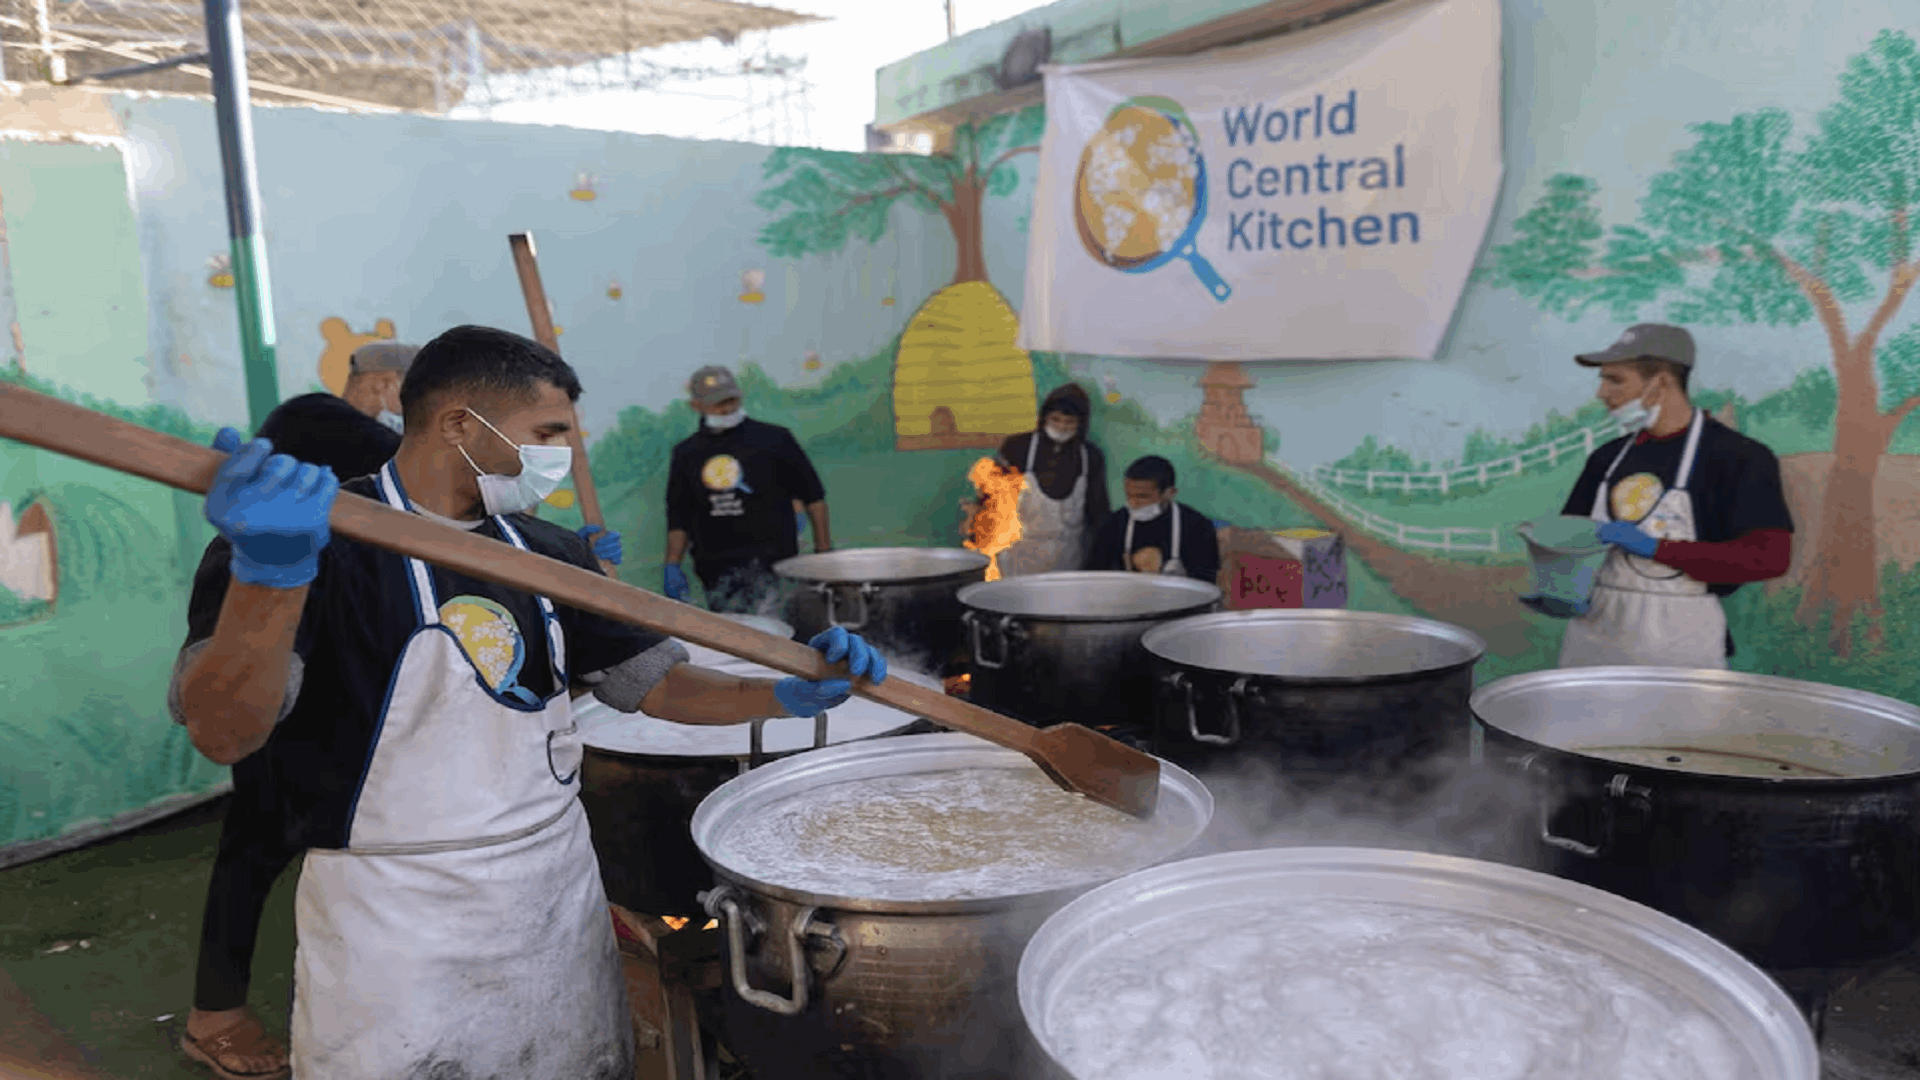 منظمة وورلد سنترال كيتشن تعلن أنها استأنفت توفير الغذاء في غزة